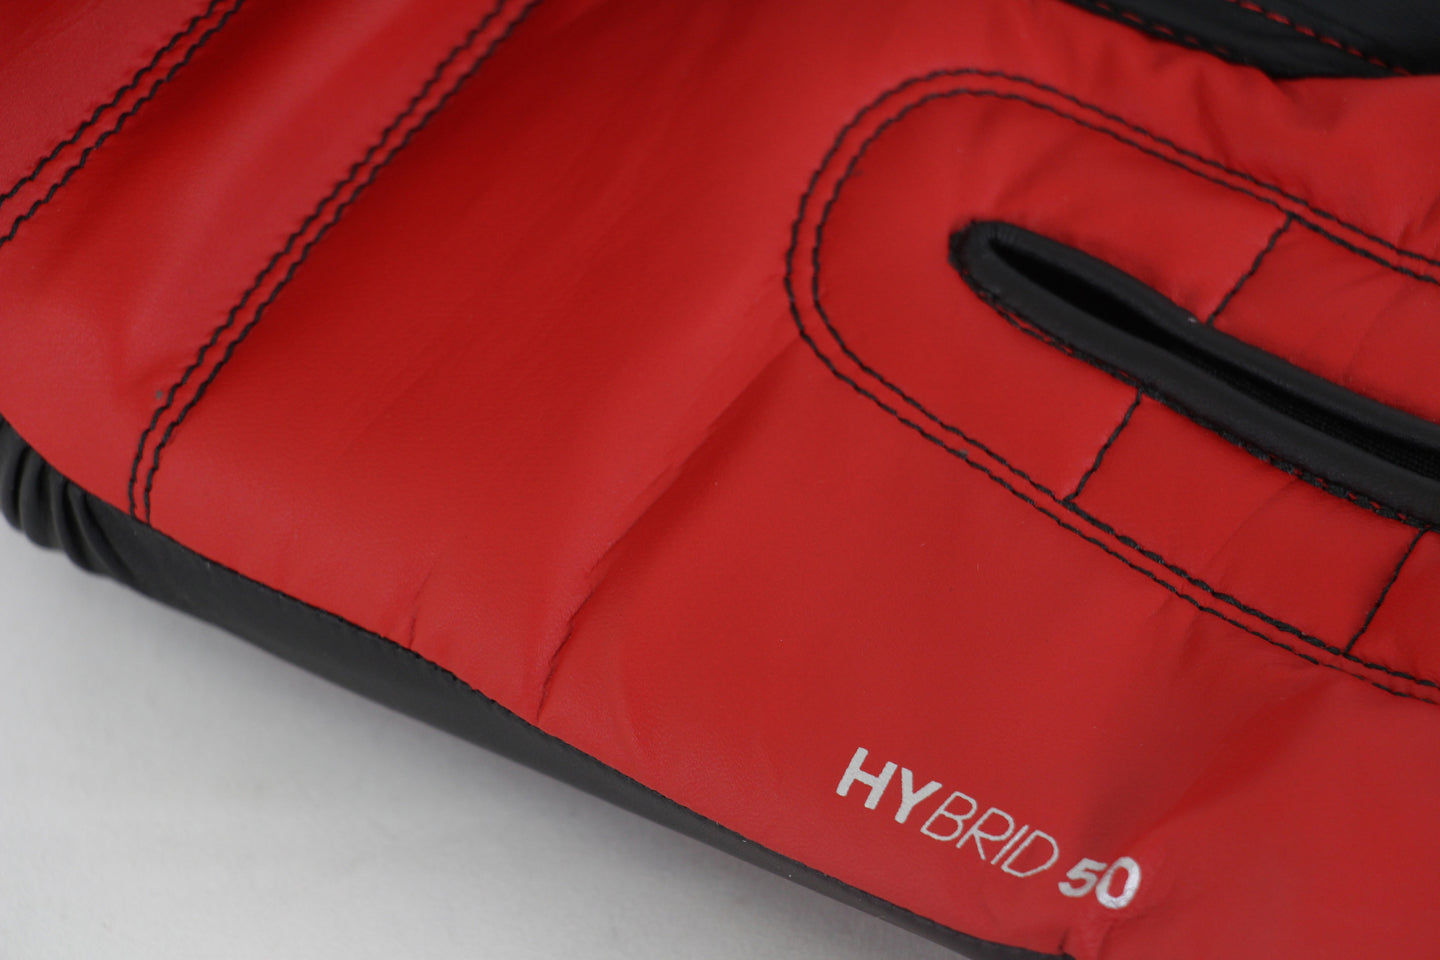 Gants de boxe Adidas Hybrid 50 - Noir/Rouge